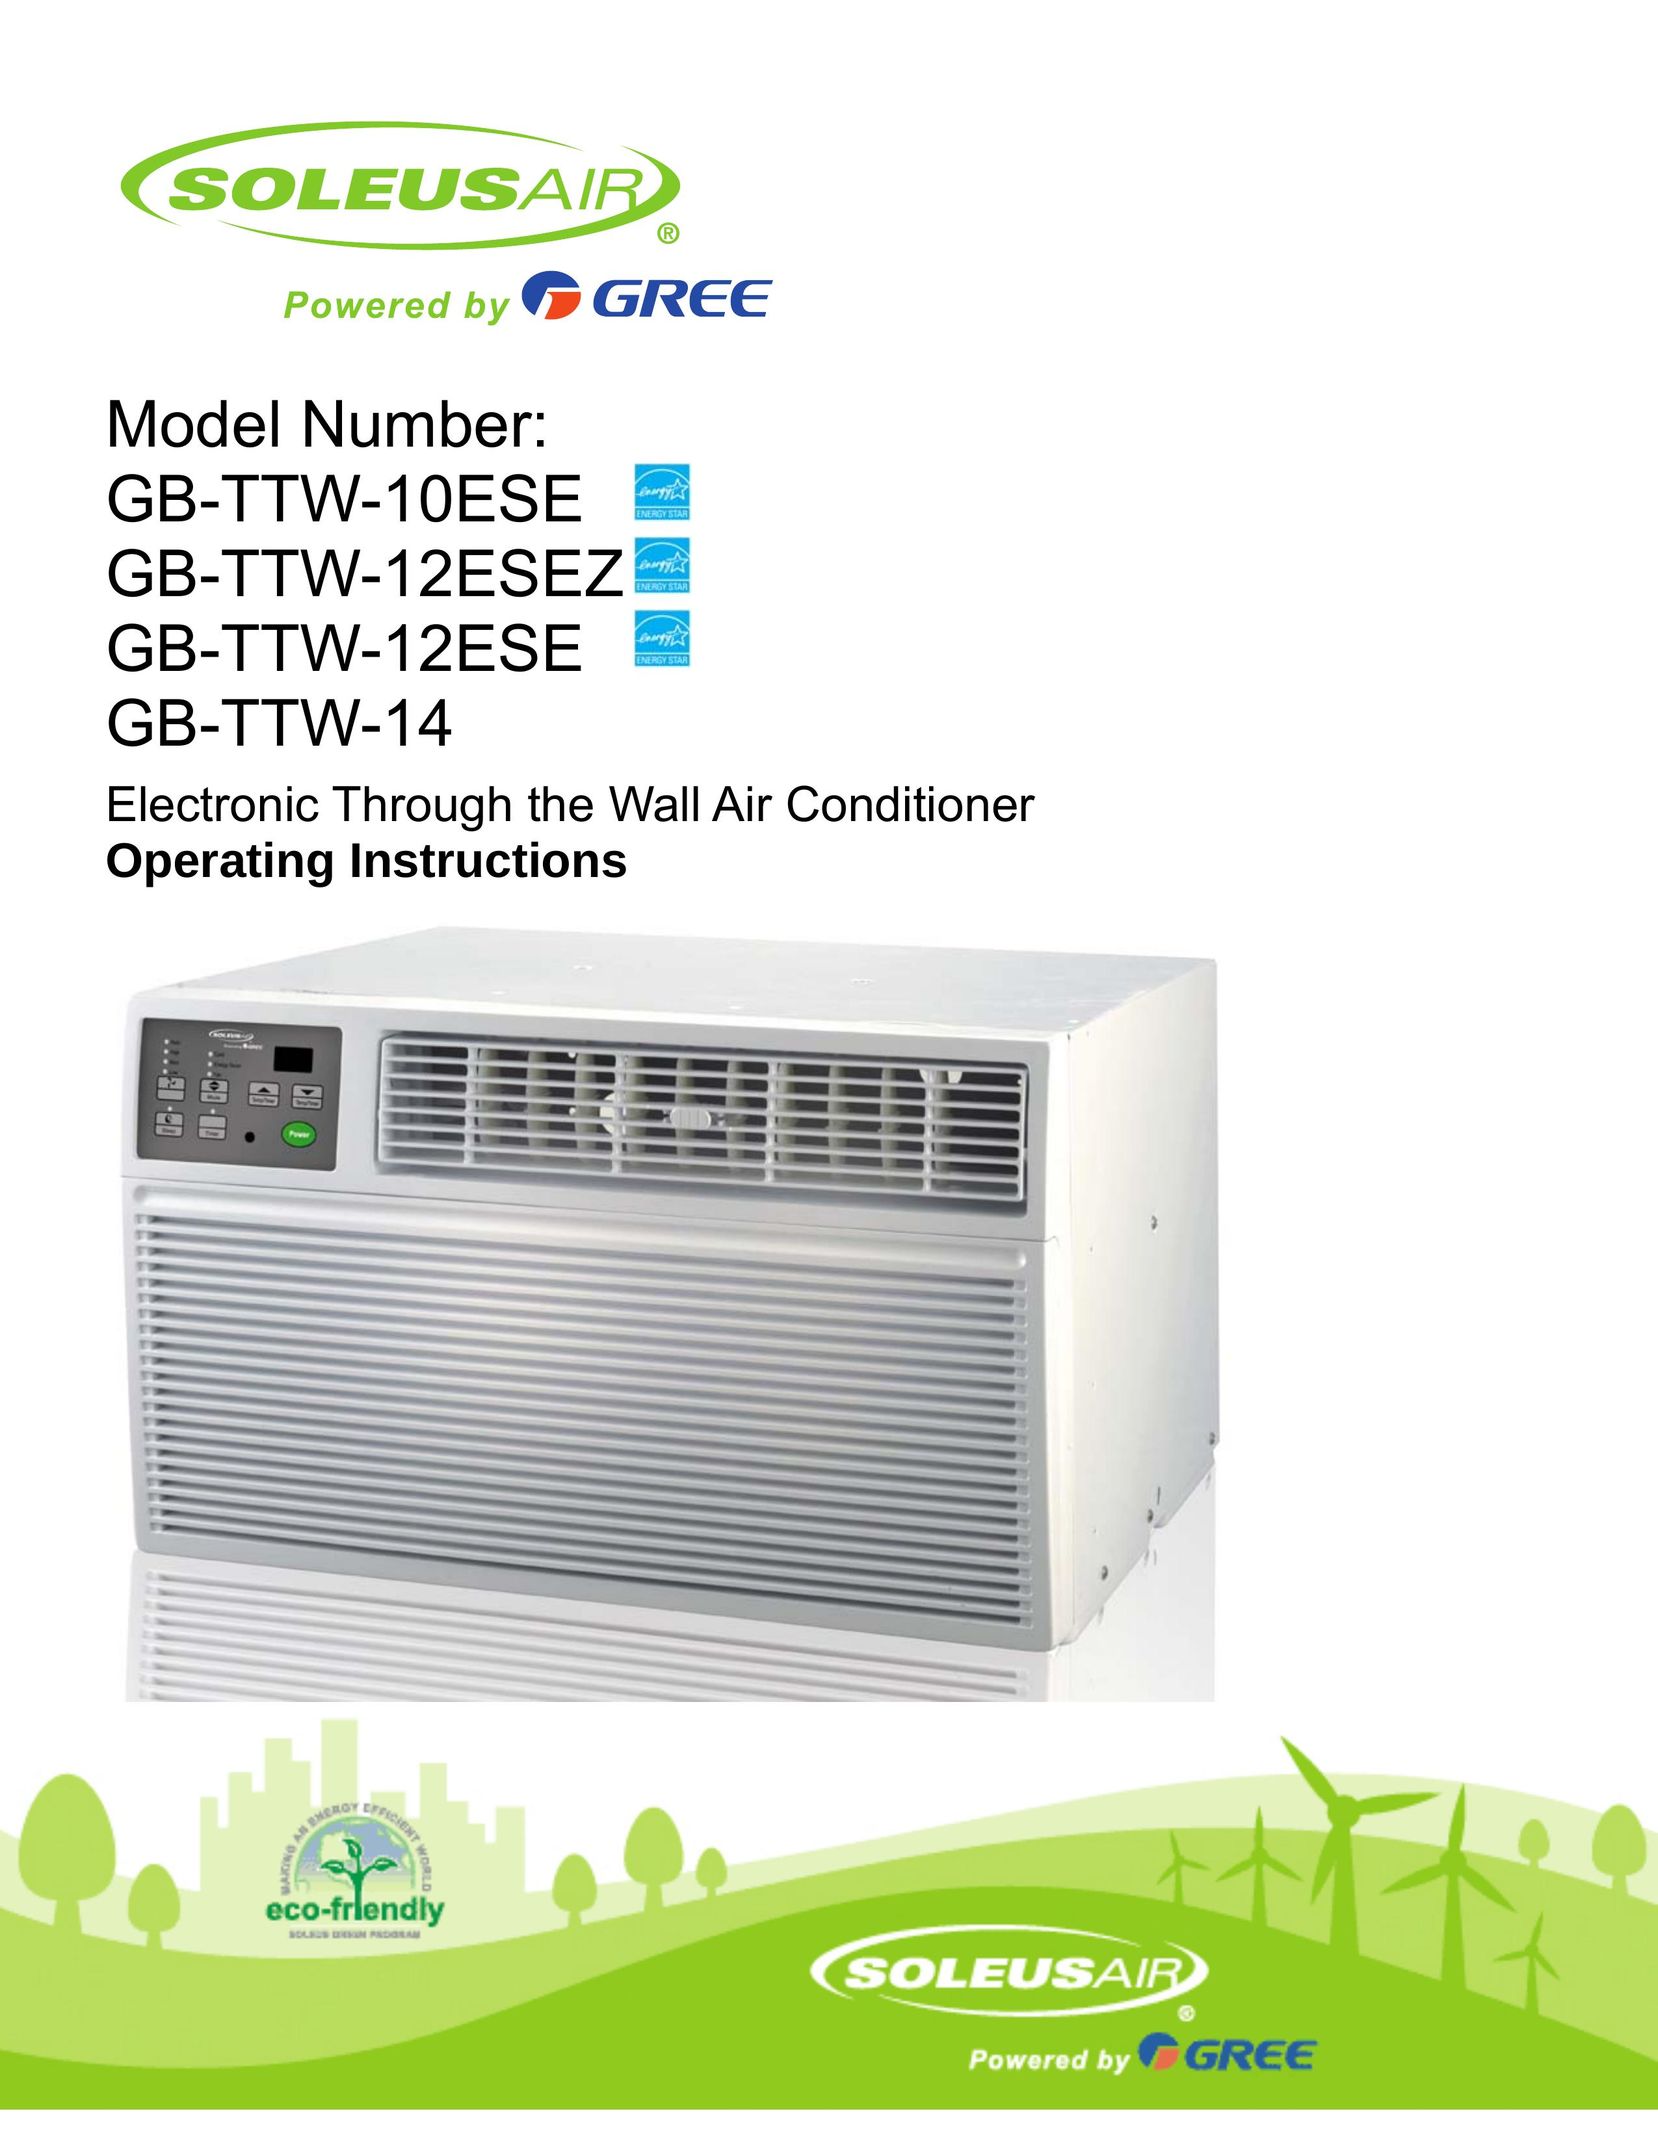 Soleus Air GB-TTW-12ESE Air Conditioner User Manual